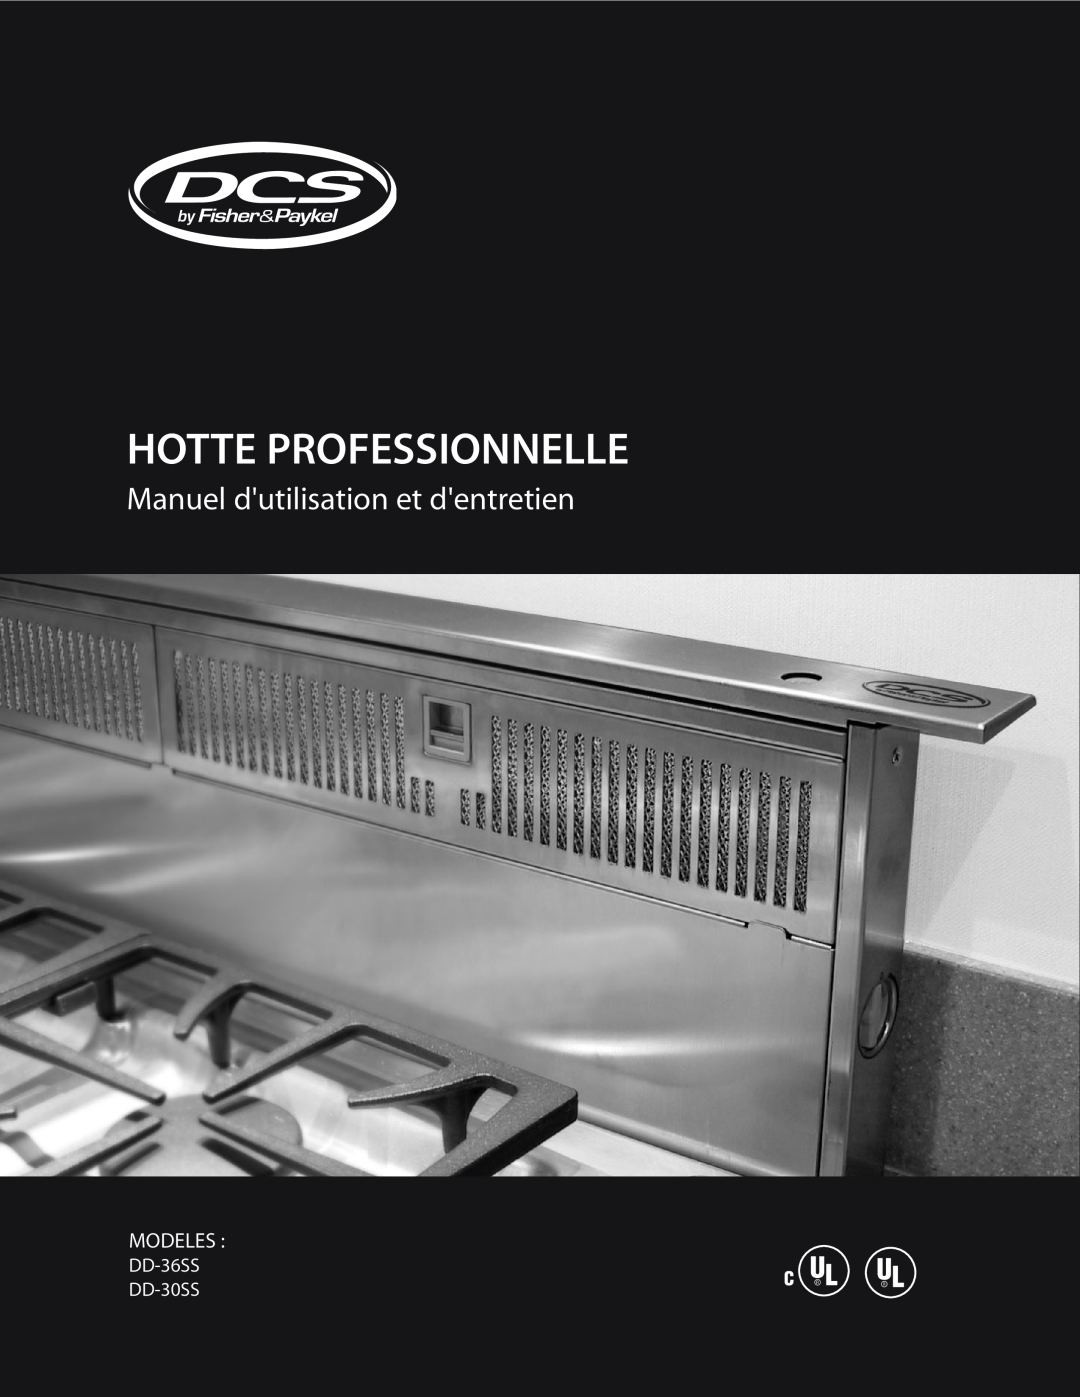 DCS manual Hotte Professionnelle, Manuel dutilisation et dentretien, Modeles, DD-36SS DD-30SS 